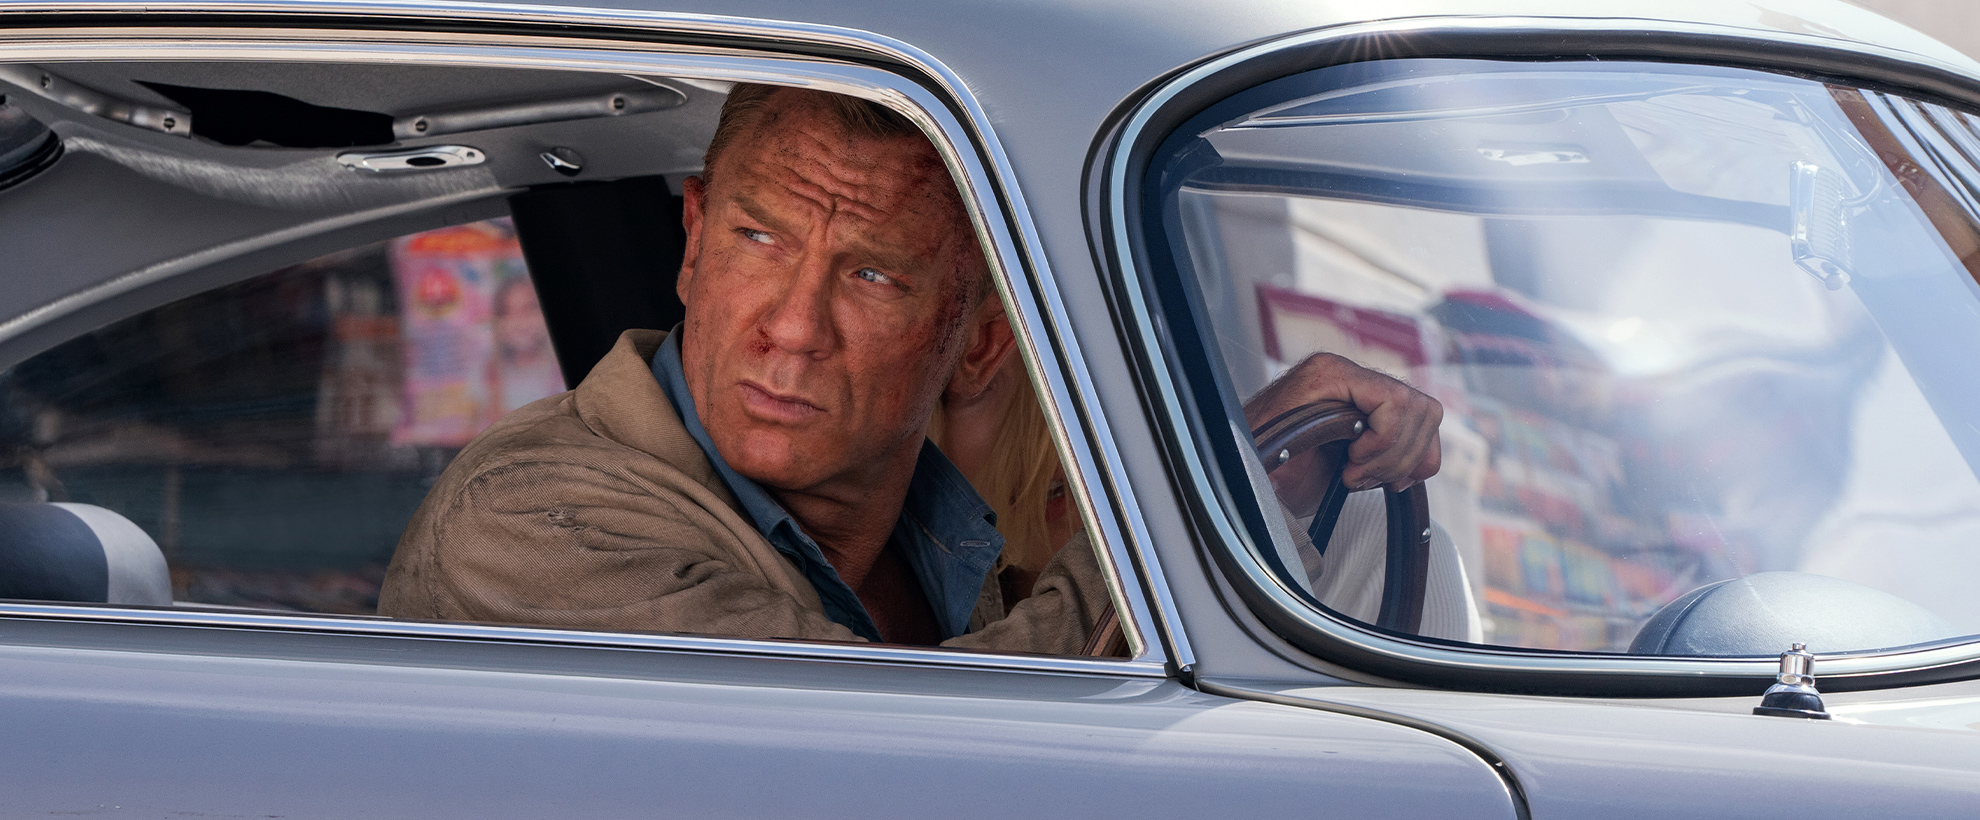 Daniel Craig as James Bond, driving a light blue vintage car